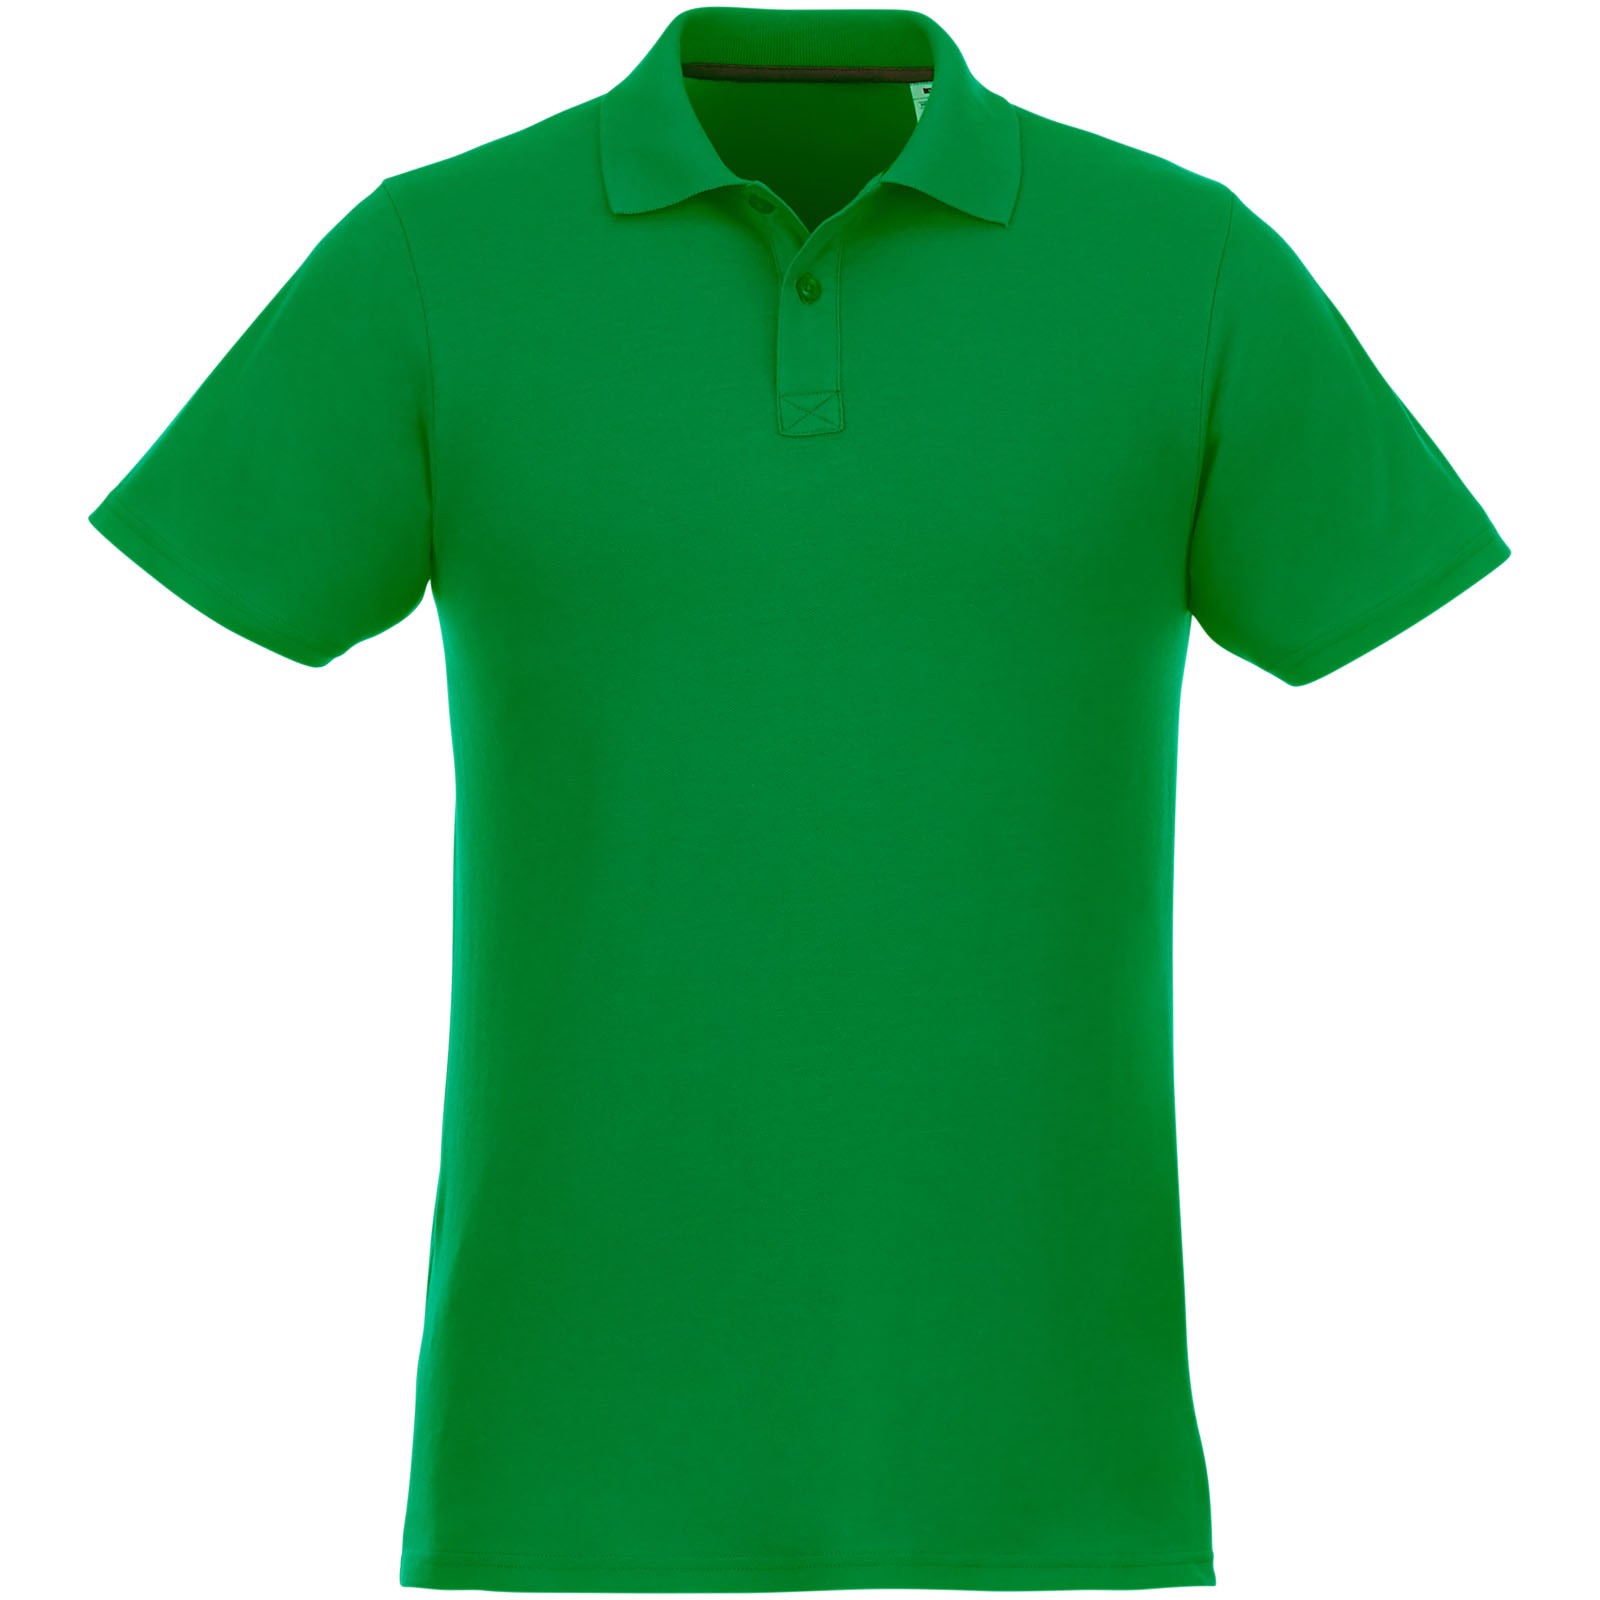 Helios - koszulka męska polo z krótkim rękawem - Zielona paproć / L